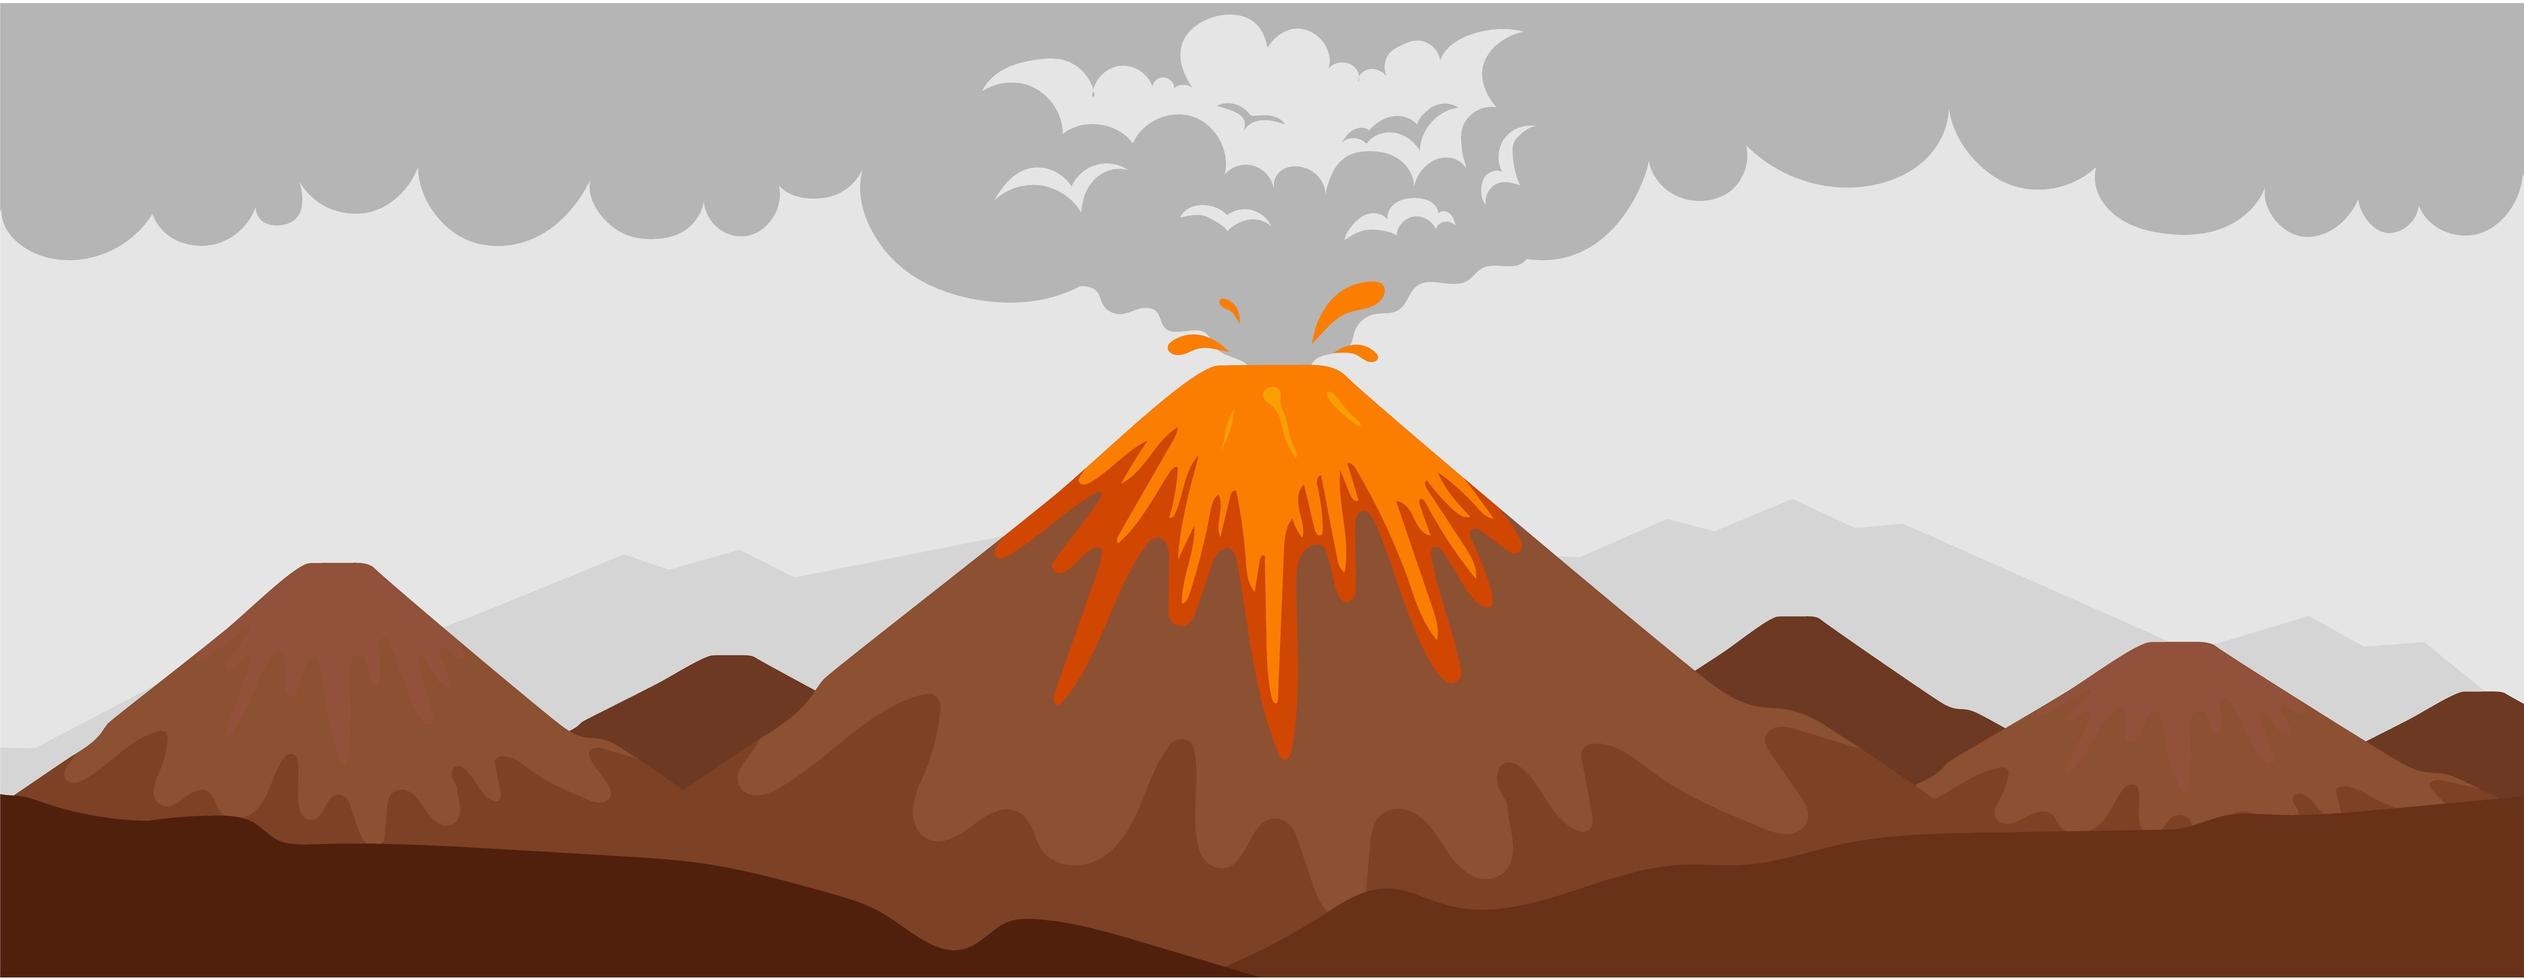 scène d'éruption du volcan vecteur